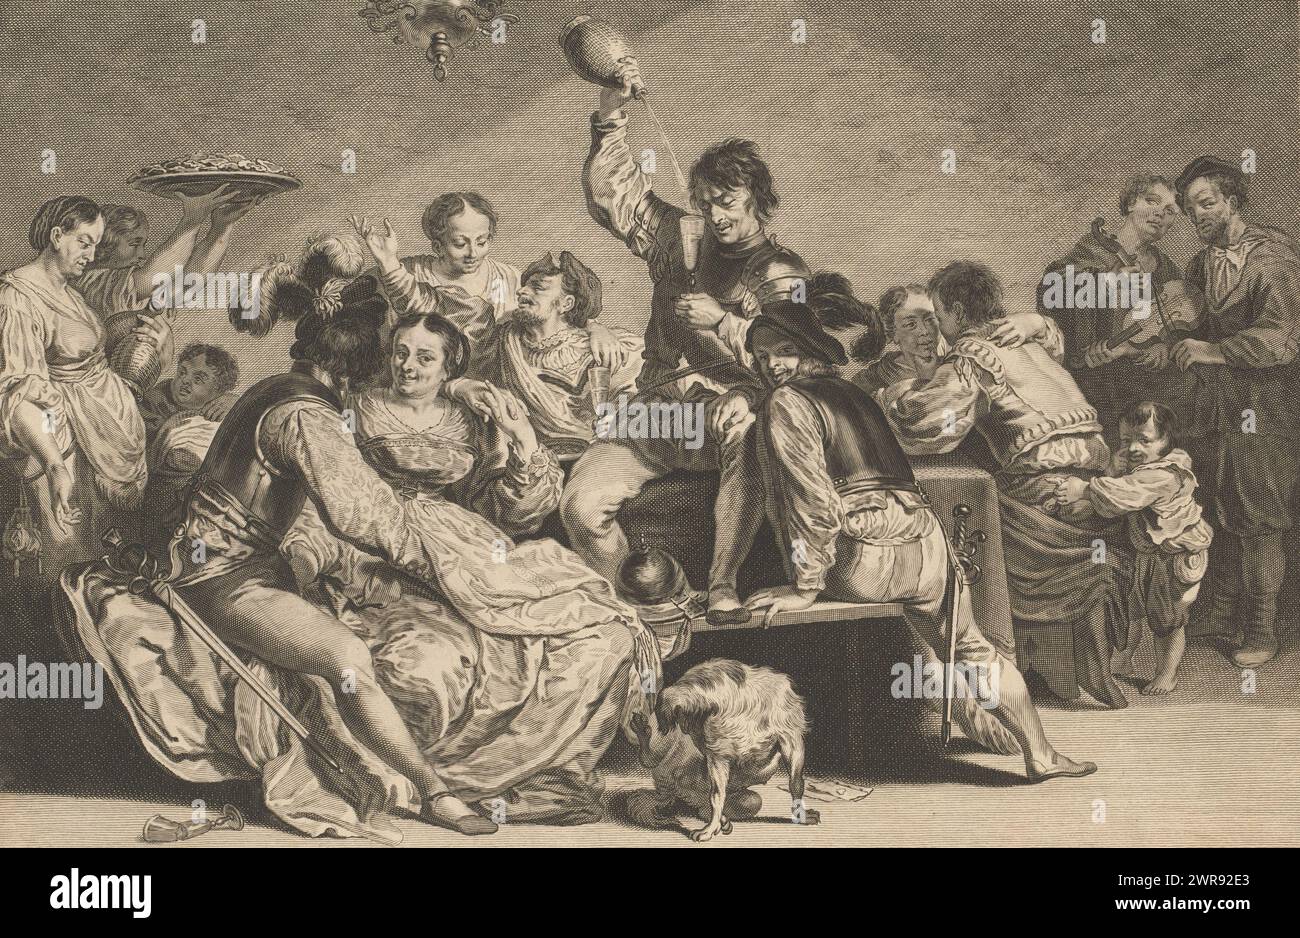 Bordel, Caelaturae (titre de la série), les soldats s'amusent à une table avec des femmes et des boissons. À côté de la table, deux musiciens jouent du violon et un petit garçon vole un sac d'argent derrière le dos d'un soldat. Au premier plan un chien, des cartes à jouer et un verre brisé., imprimeur : Jeremias Falck, après peinture par : Johann Liss, Amsterdam, 1646 - 1658, papier, gravure, hauteur 283 mm × largeur 385 mm, impression Banque D'Images